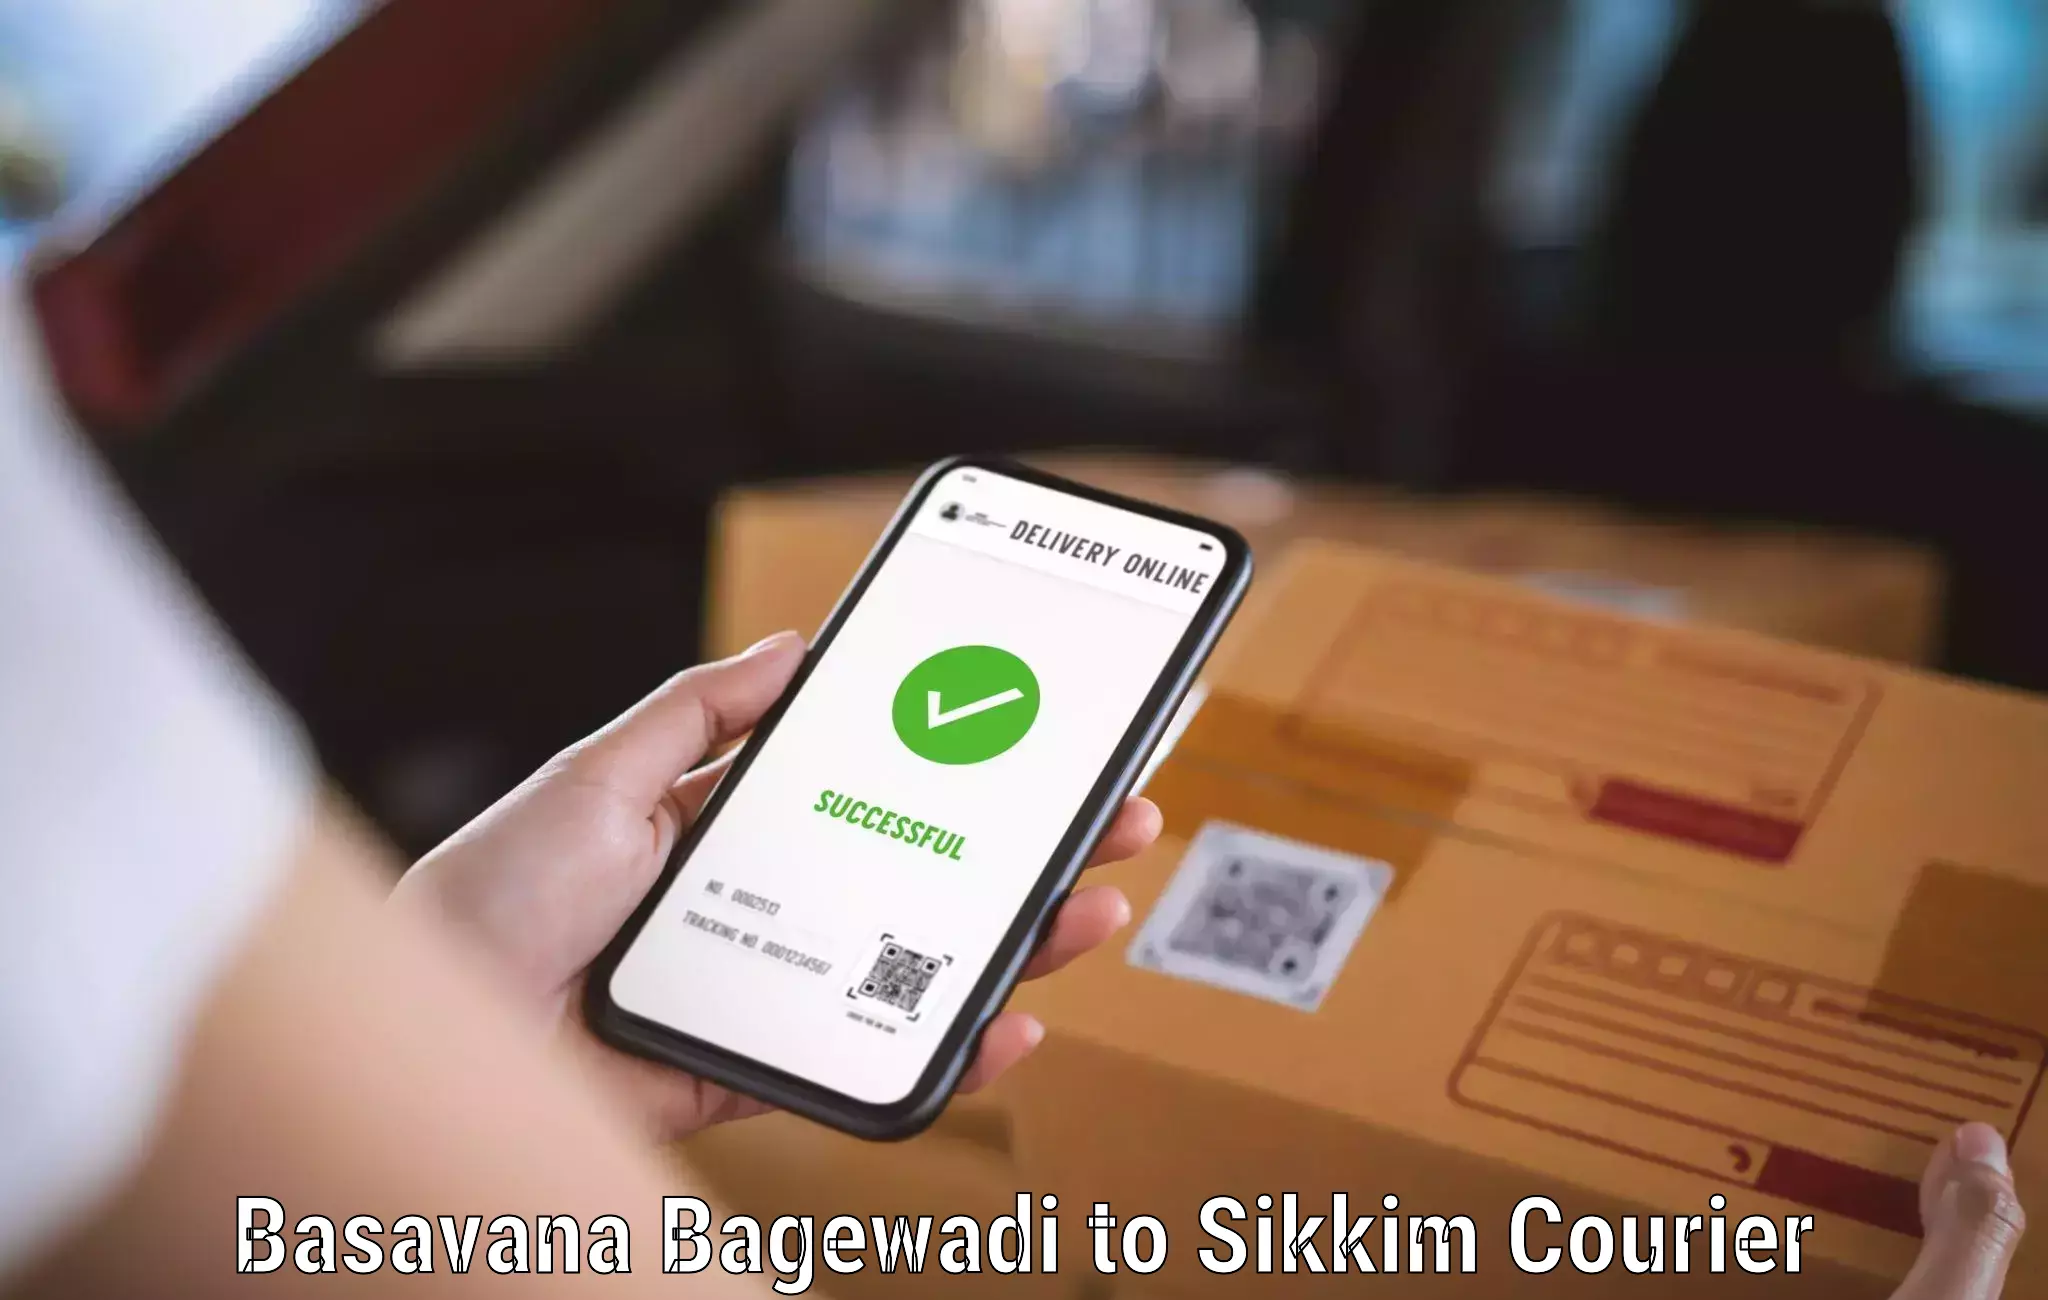 Doorstep delivery service Basavana Bagewadi to West Sikkim